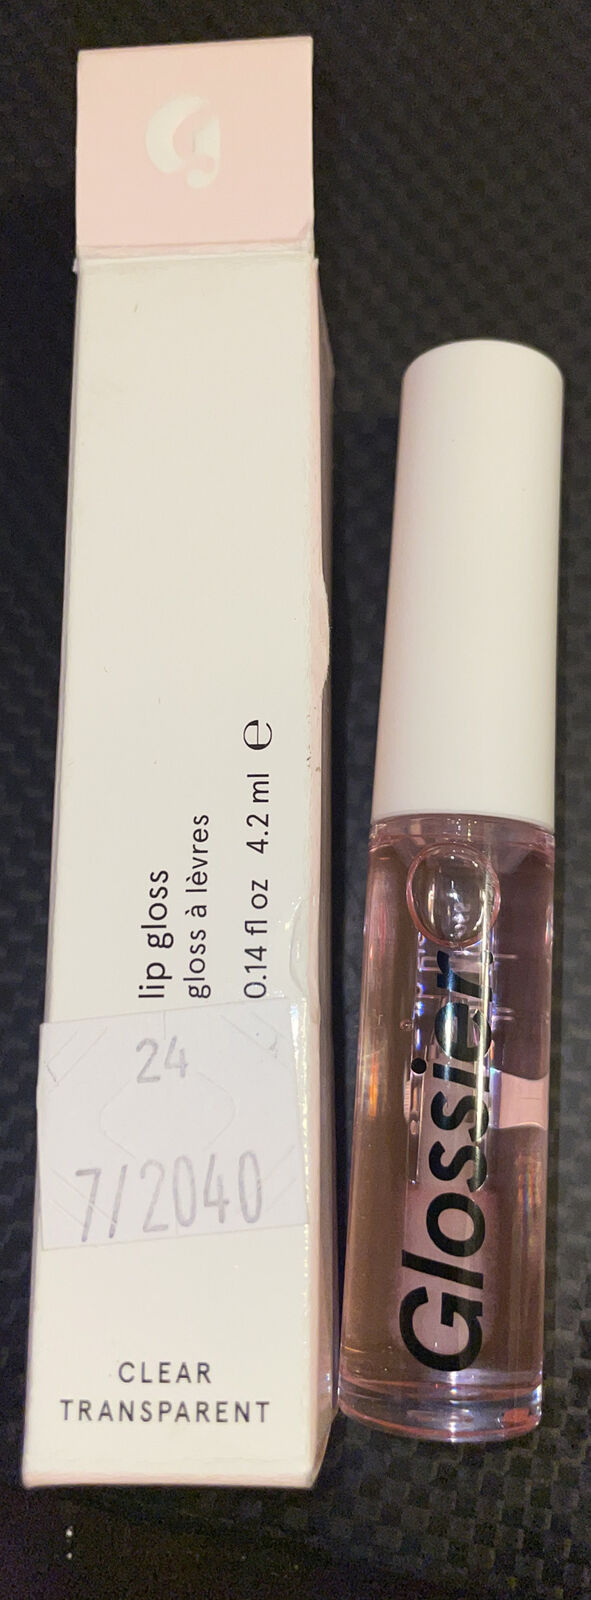 Glossier Lip Gloss clear transparent 4.2 ml full size NIB new in Box